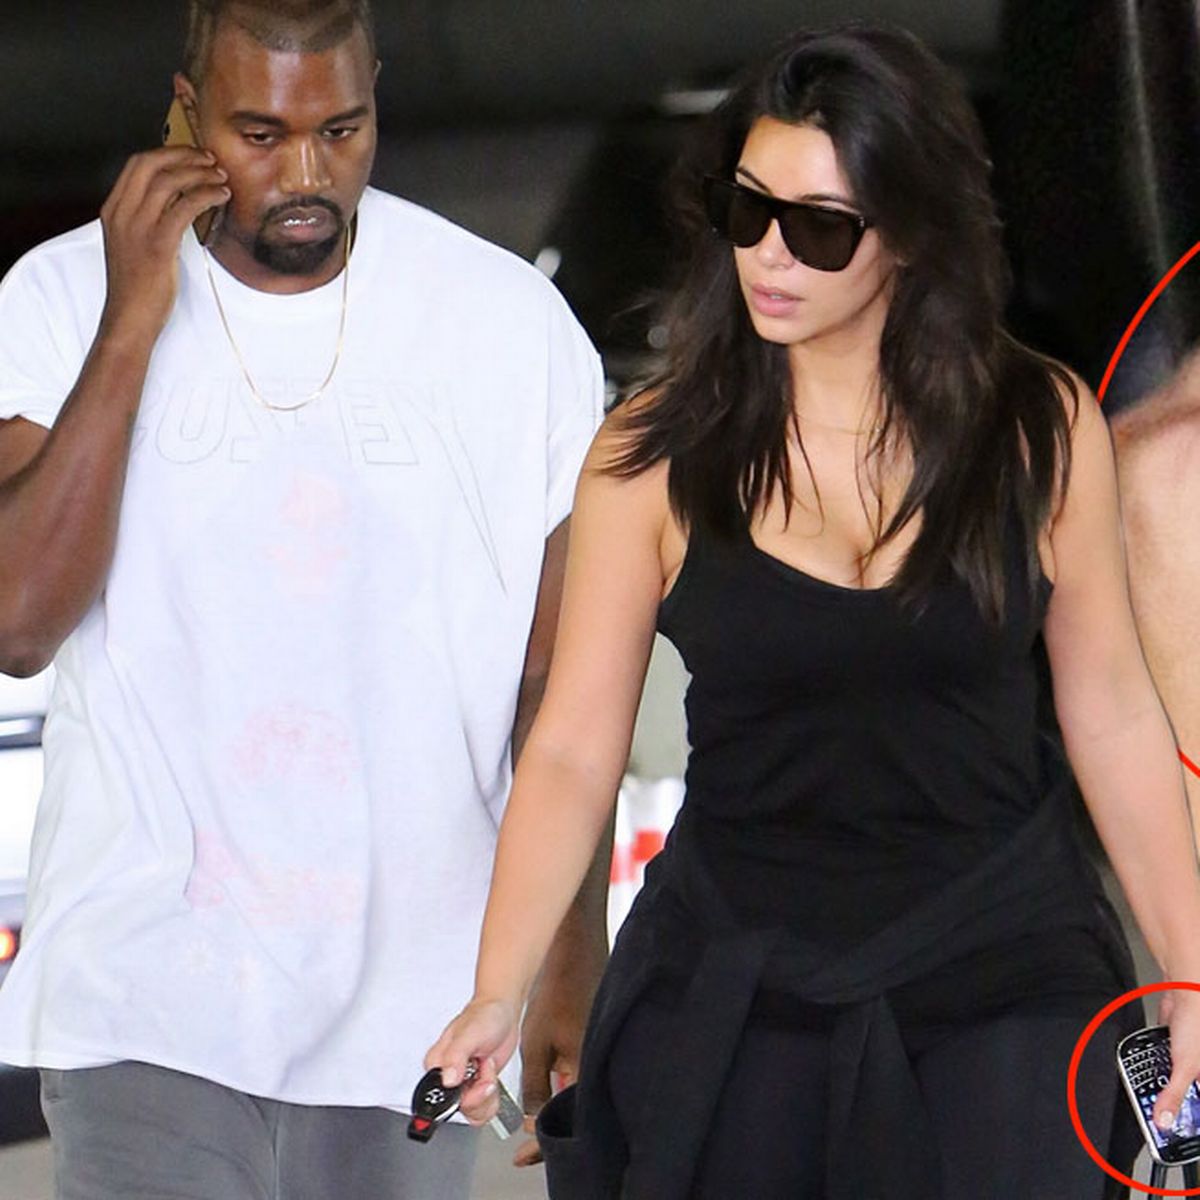 Kim Kardashian S Phone Background Is Loving Photo With Kanye West